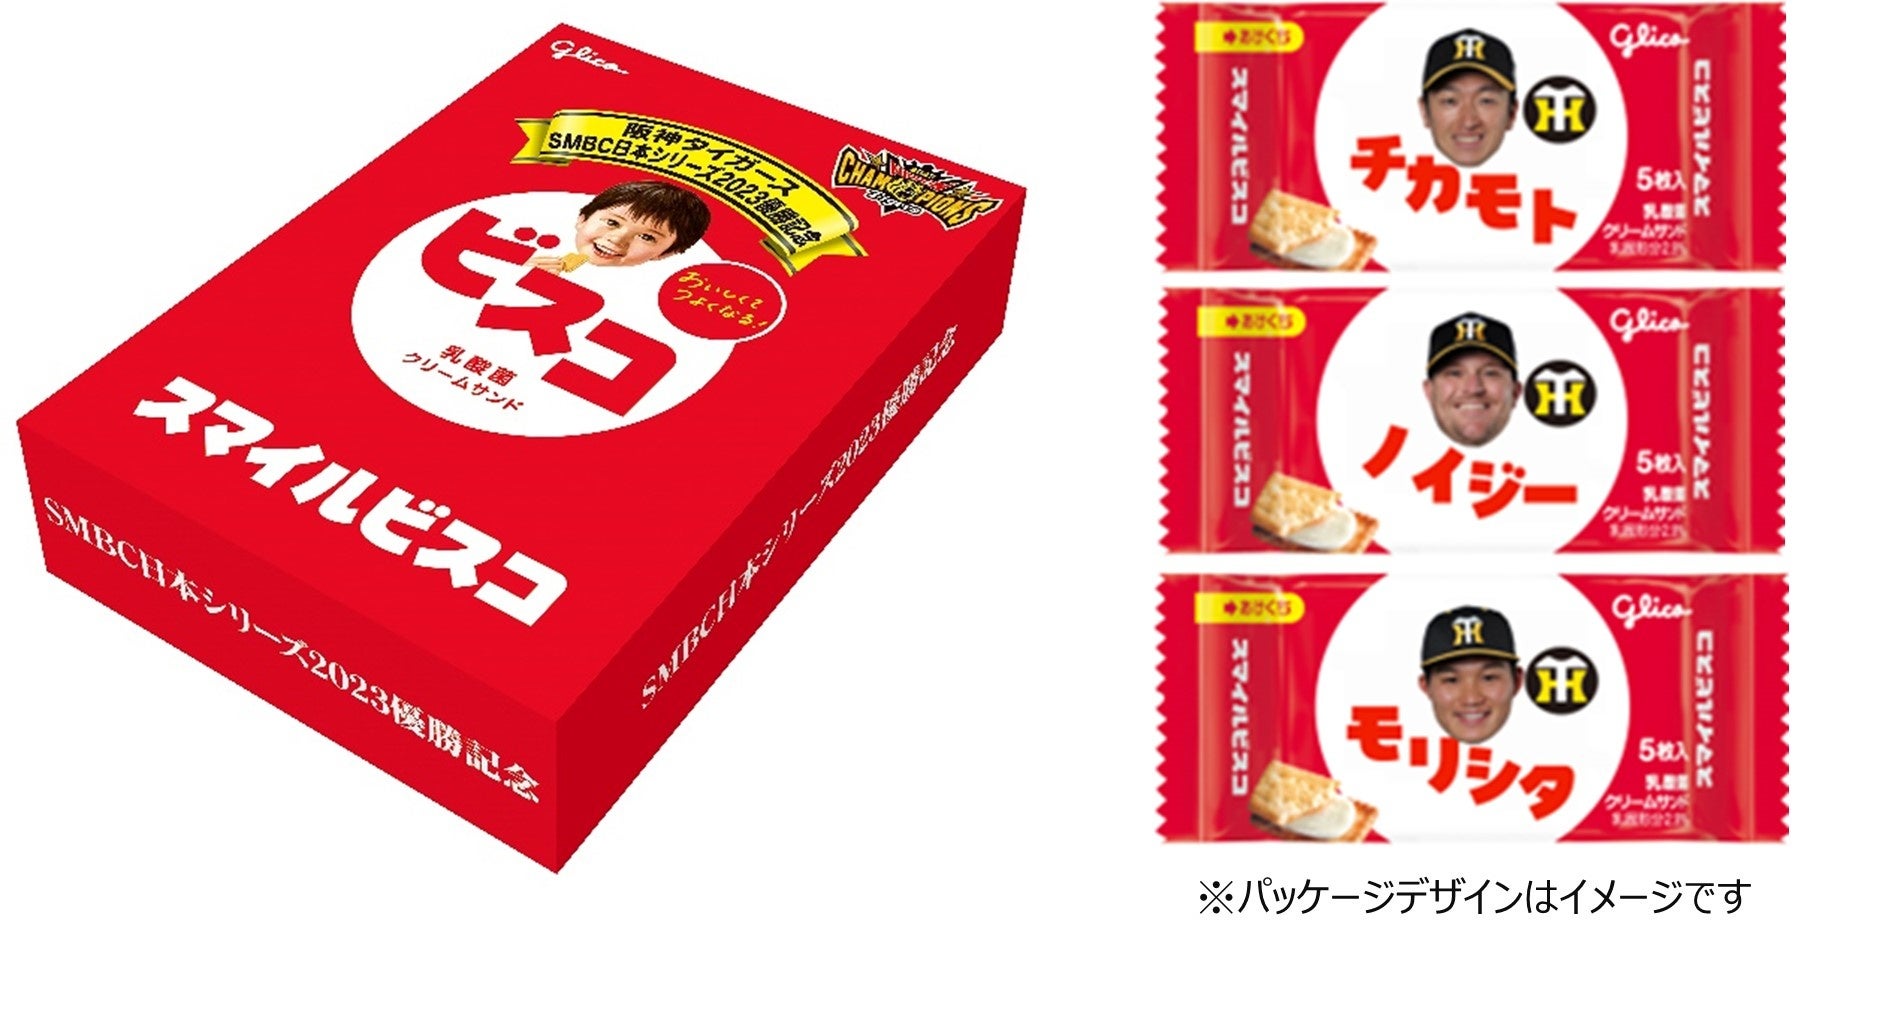 「阪神タイガース日本一記念スマイルビスコ」 5,000セット限定で発売